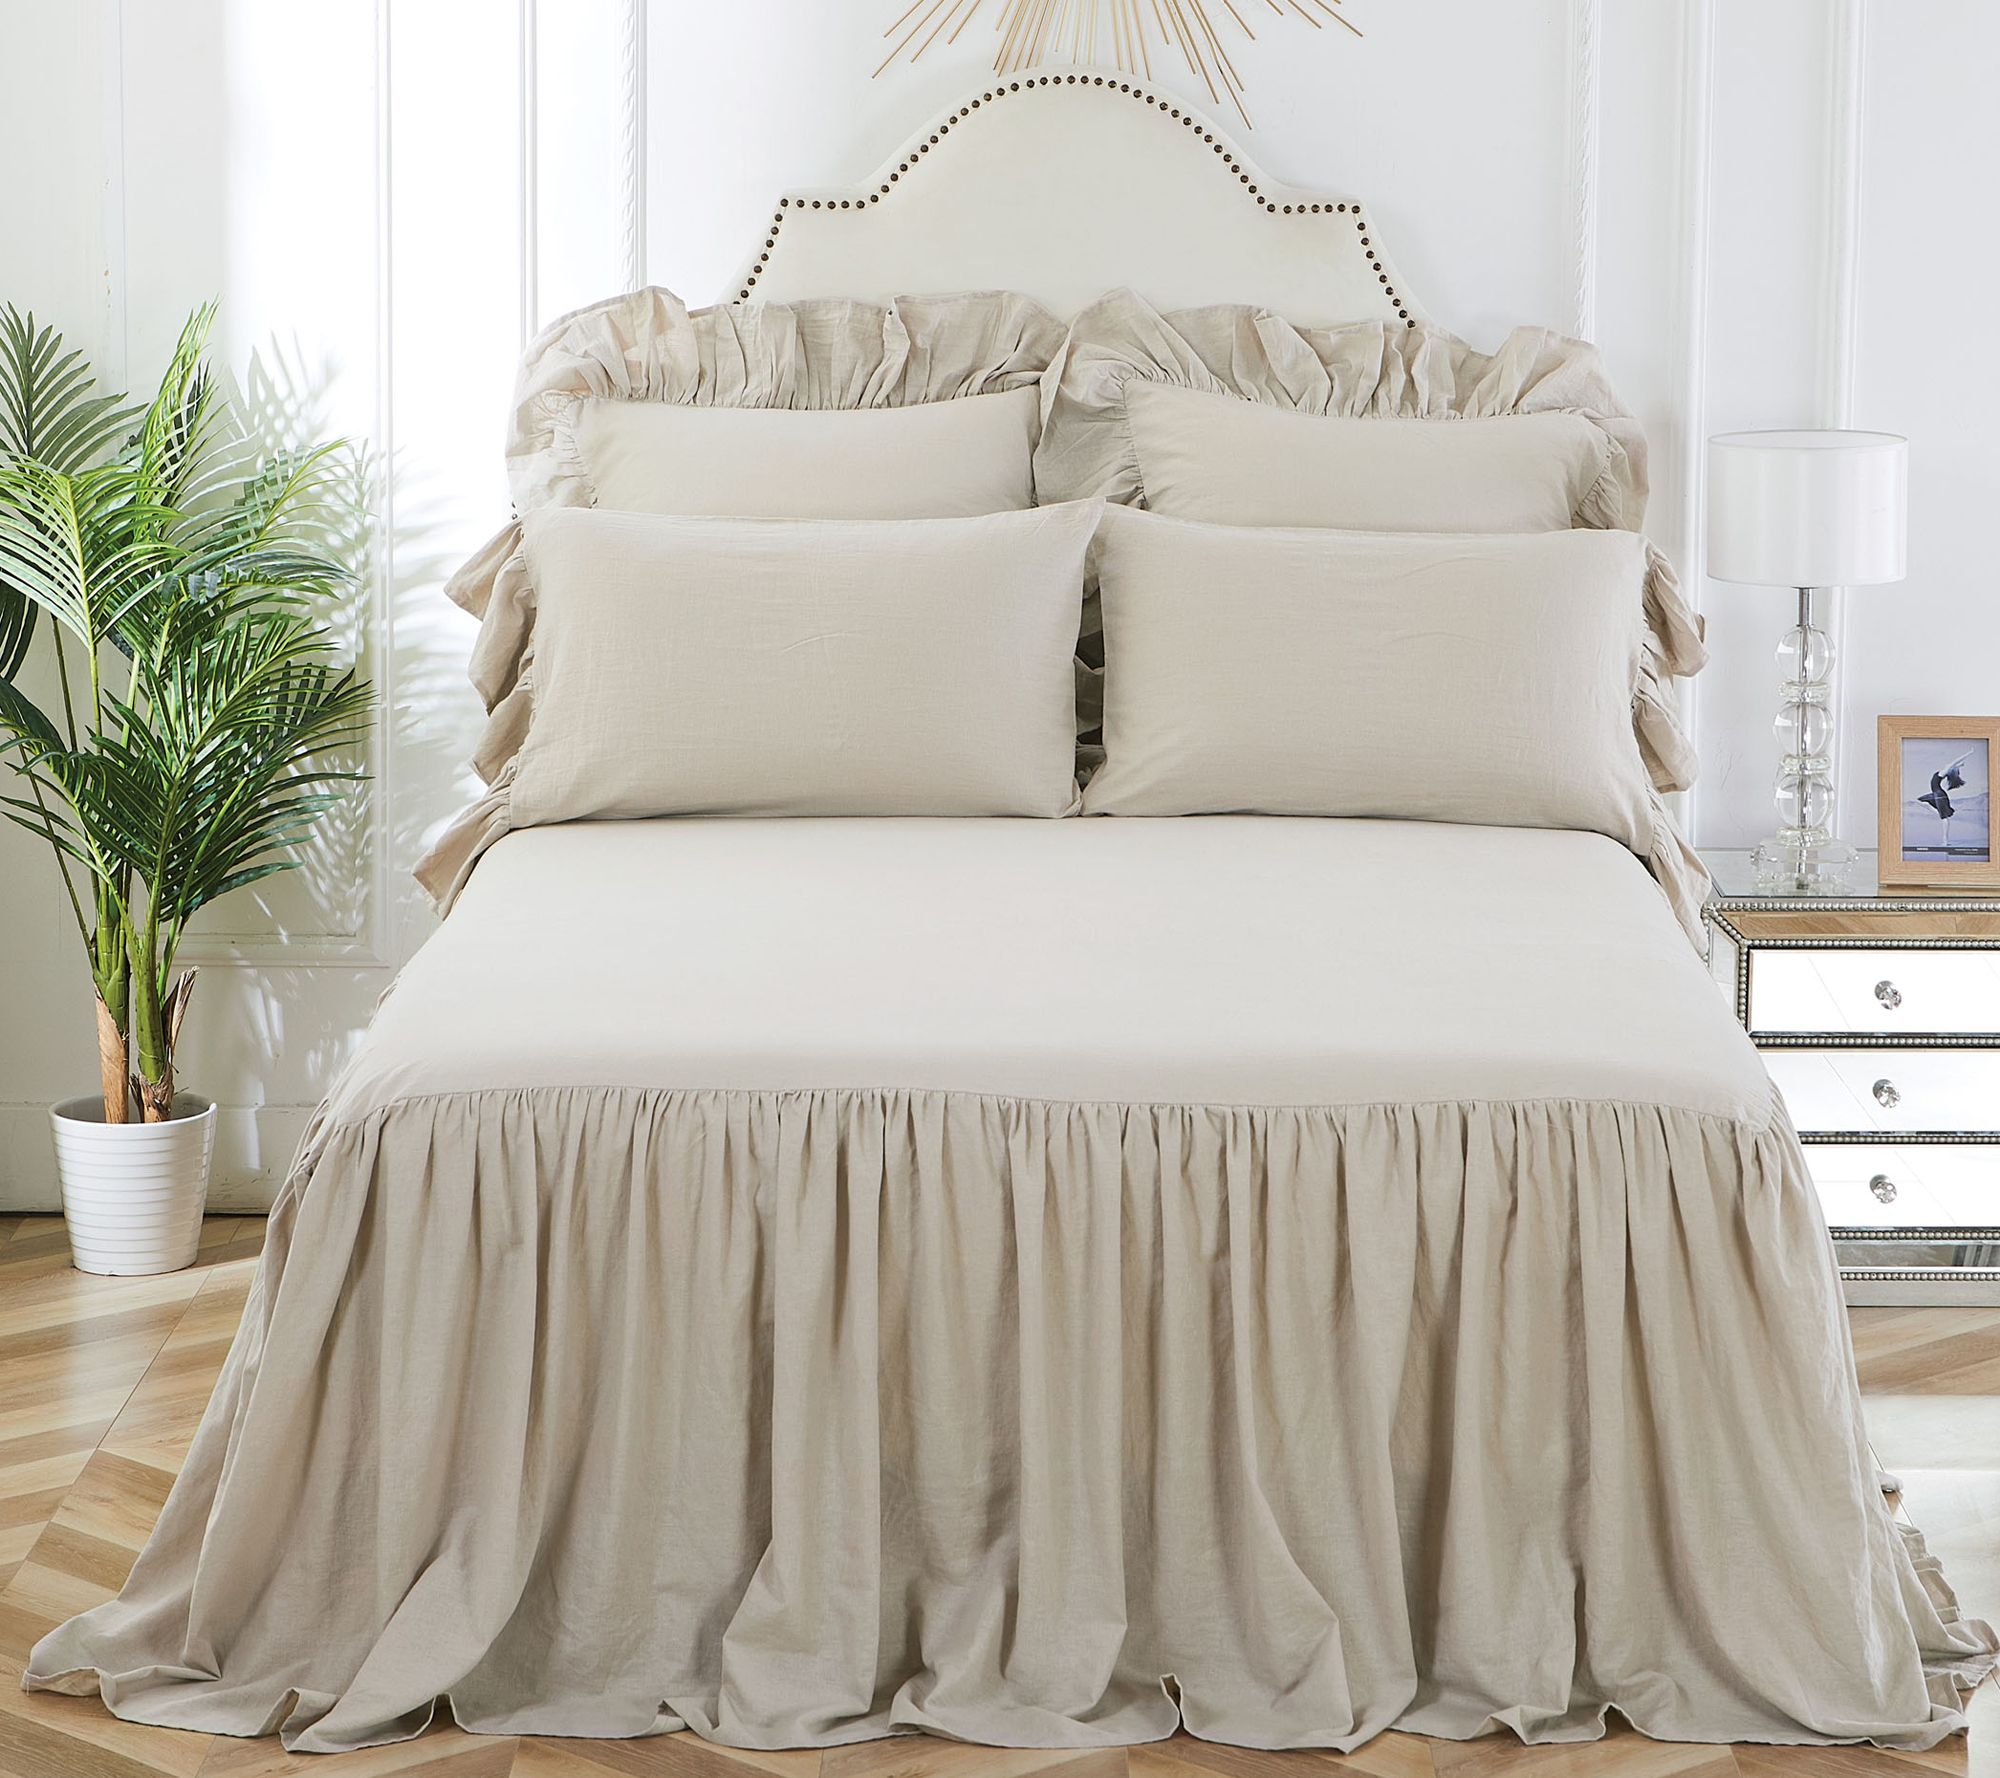 C&F Home Ruffled Queen Bedspread Natural - QVC.com